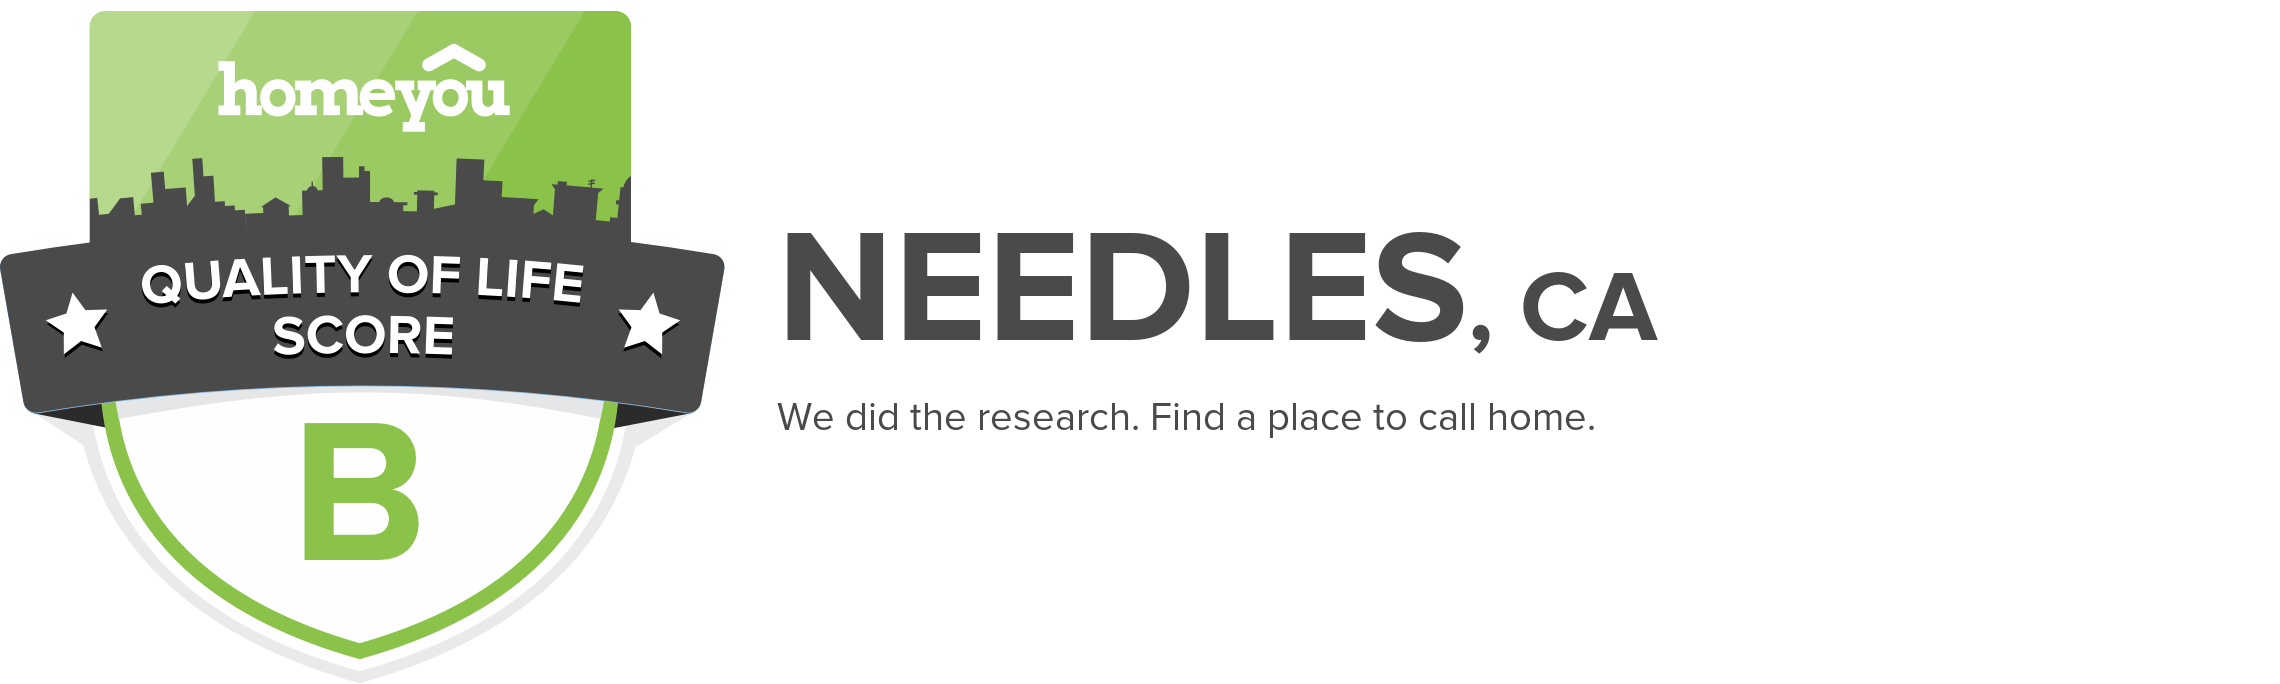 Needles, CA